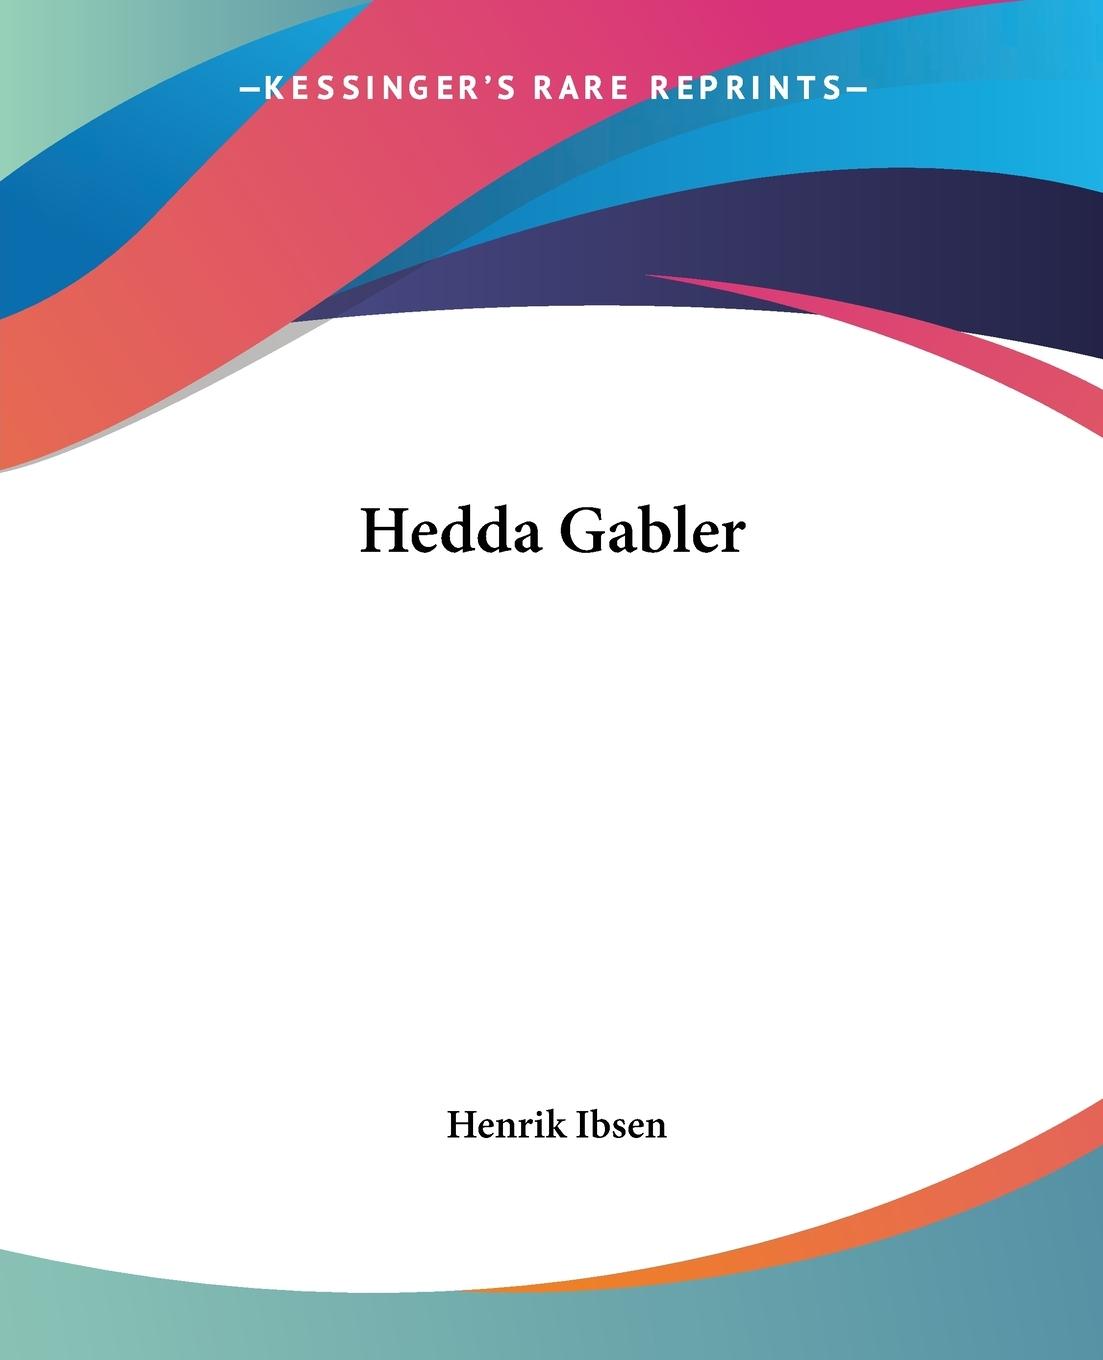 Hedda Gabler - Ibsen, Henrik